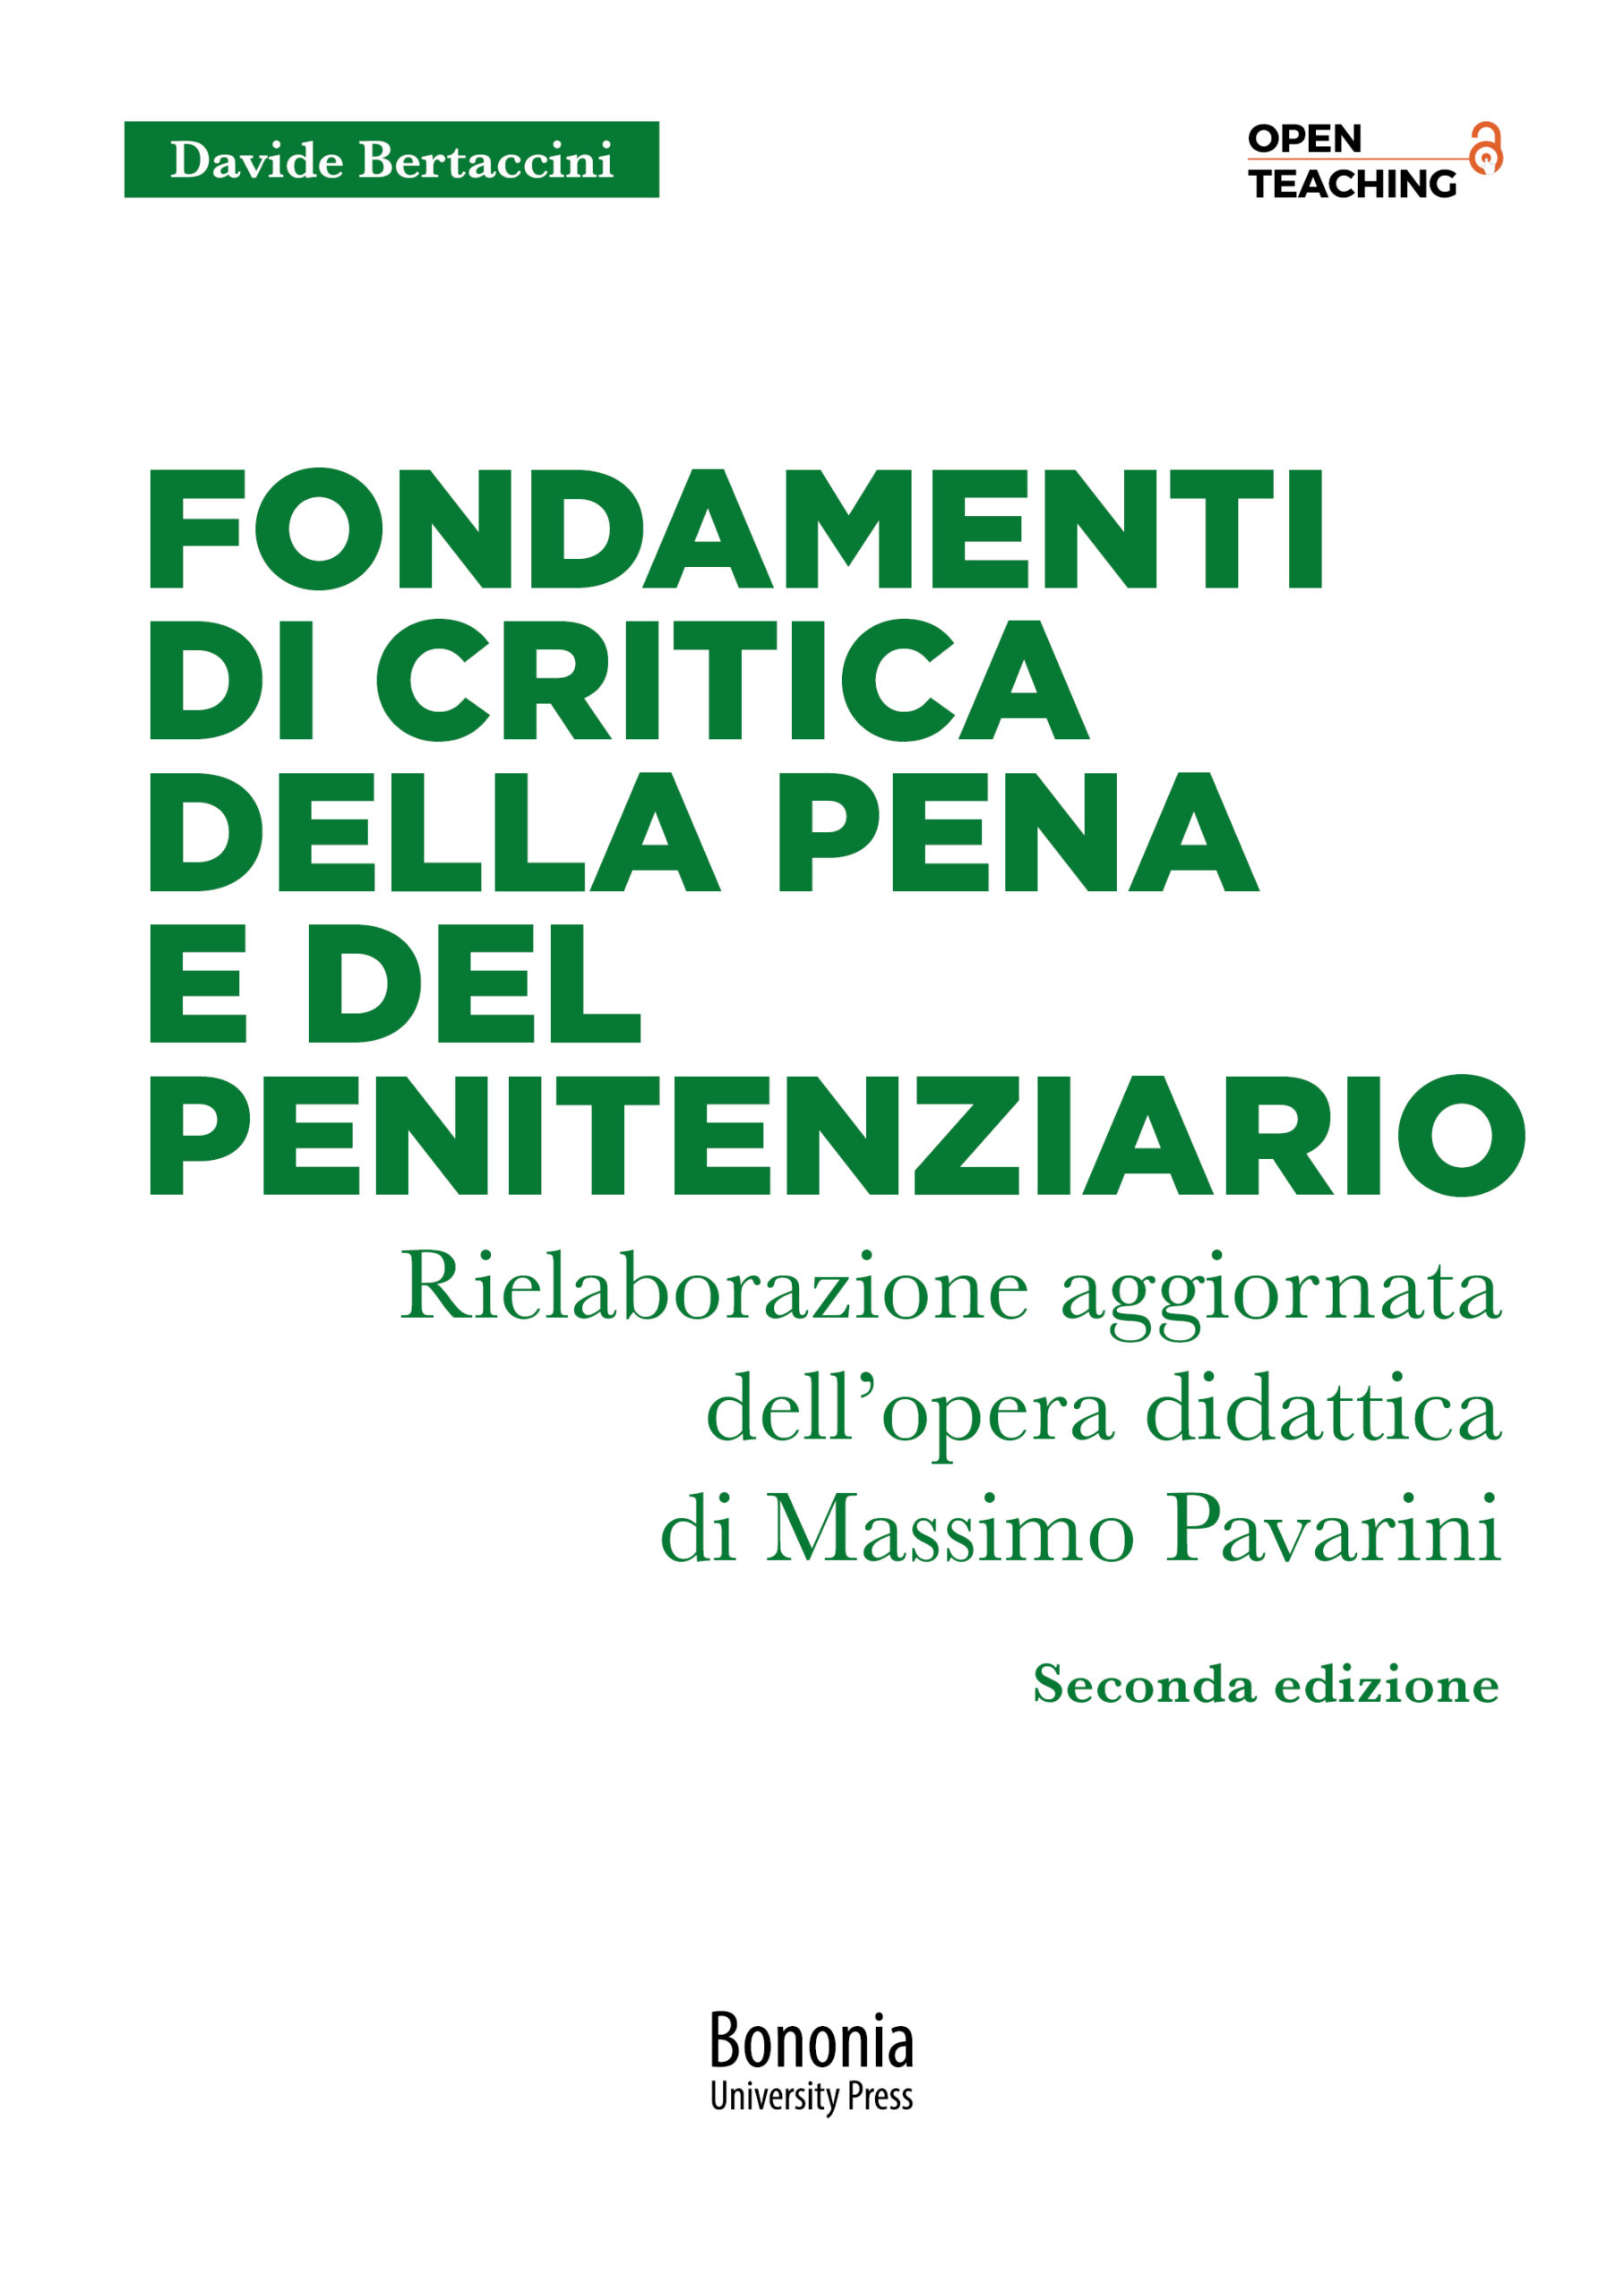 Fondamenti di critica della pena - seconda edizione - Bologna University Press